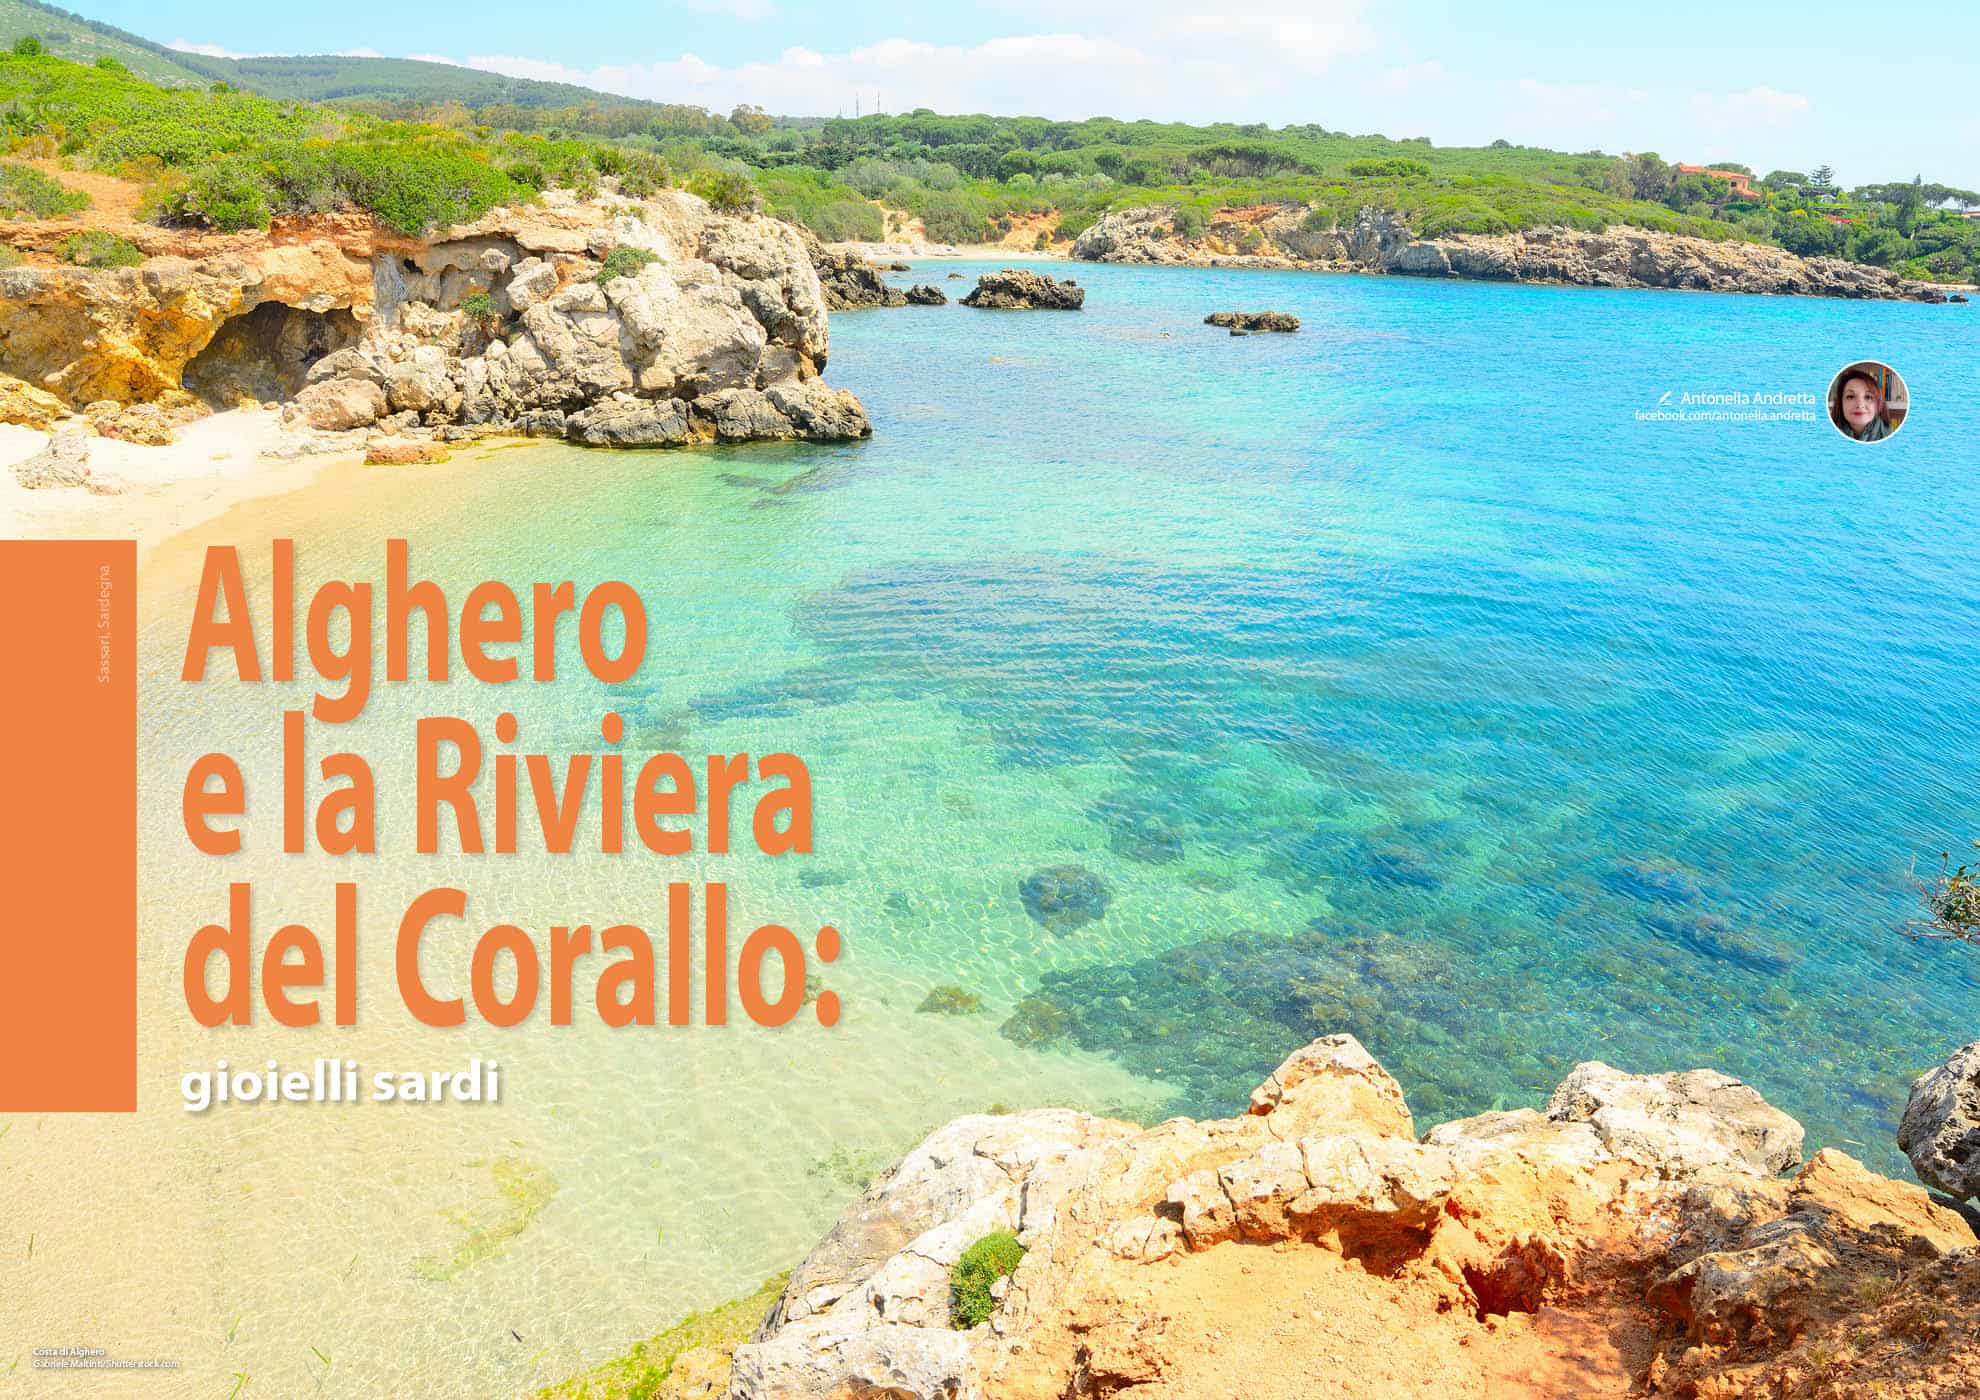 e-borghi travel 4: Mare e borghi - Alghero - Riviera del corallo: gioielli sardi